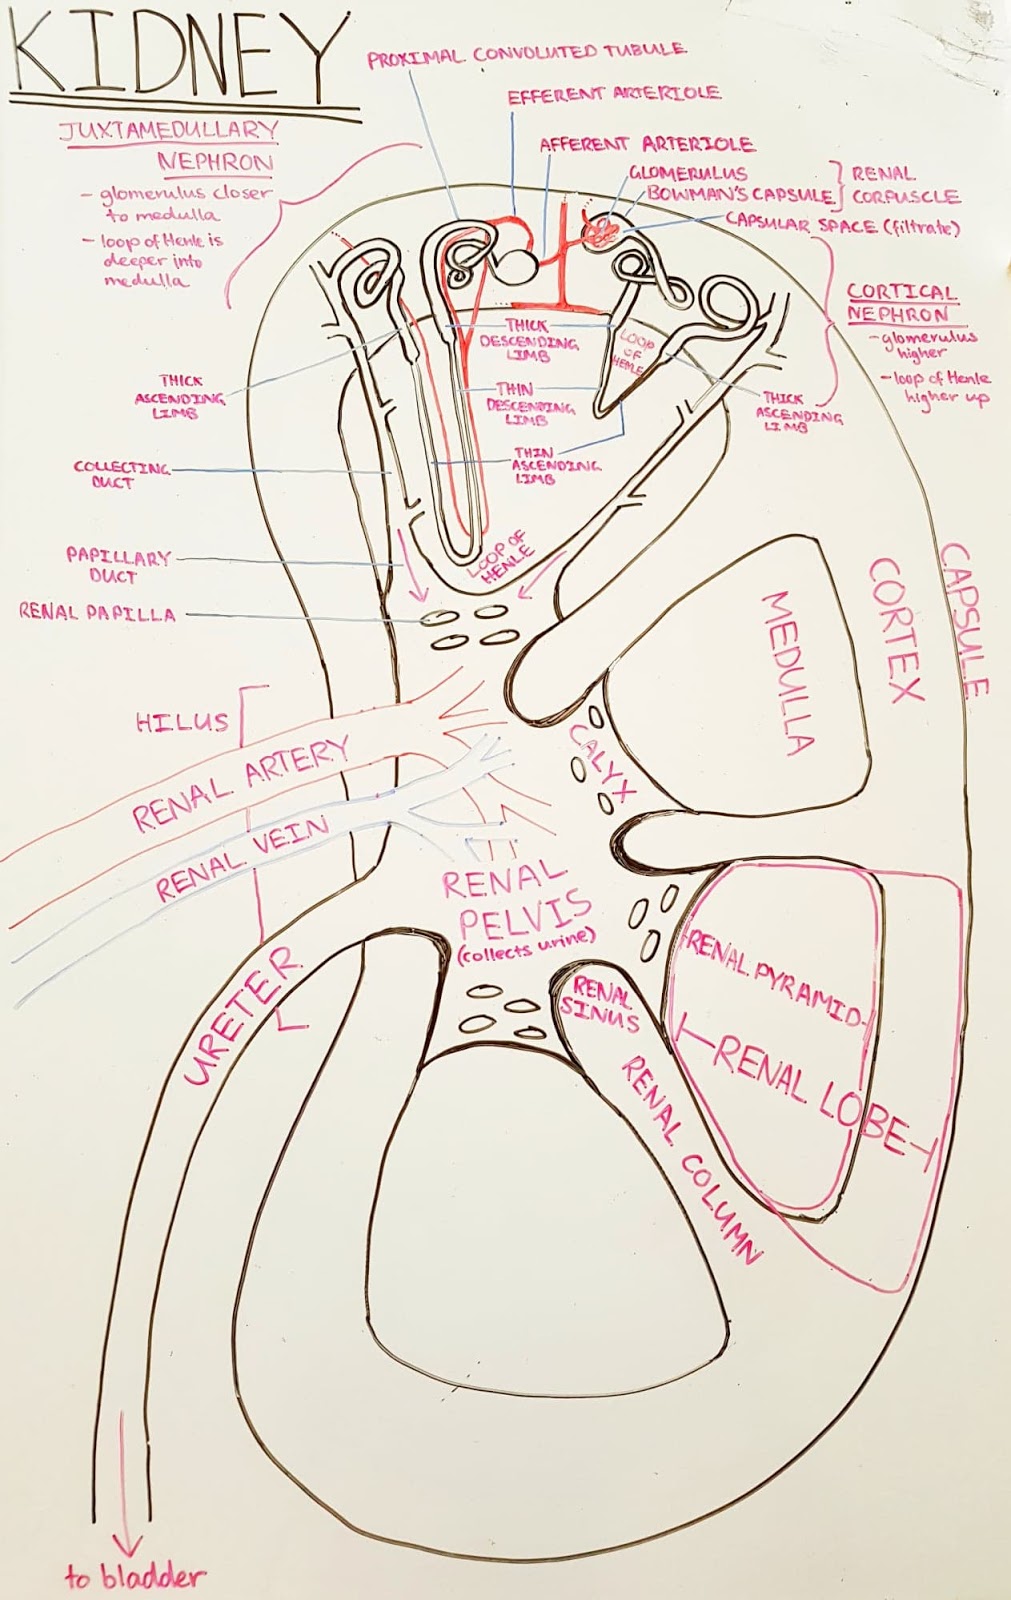 Anatomy of a Kidney | Vet Bites